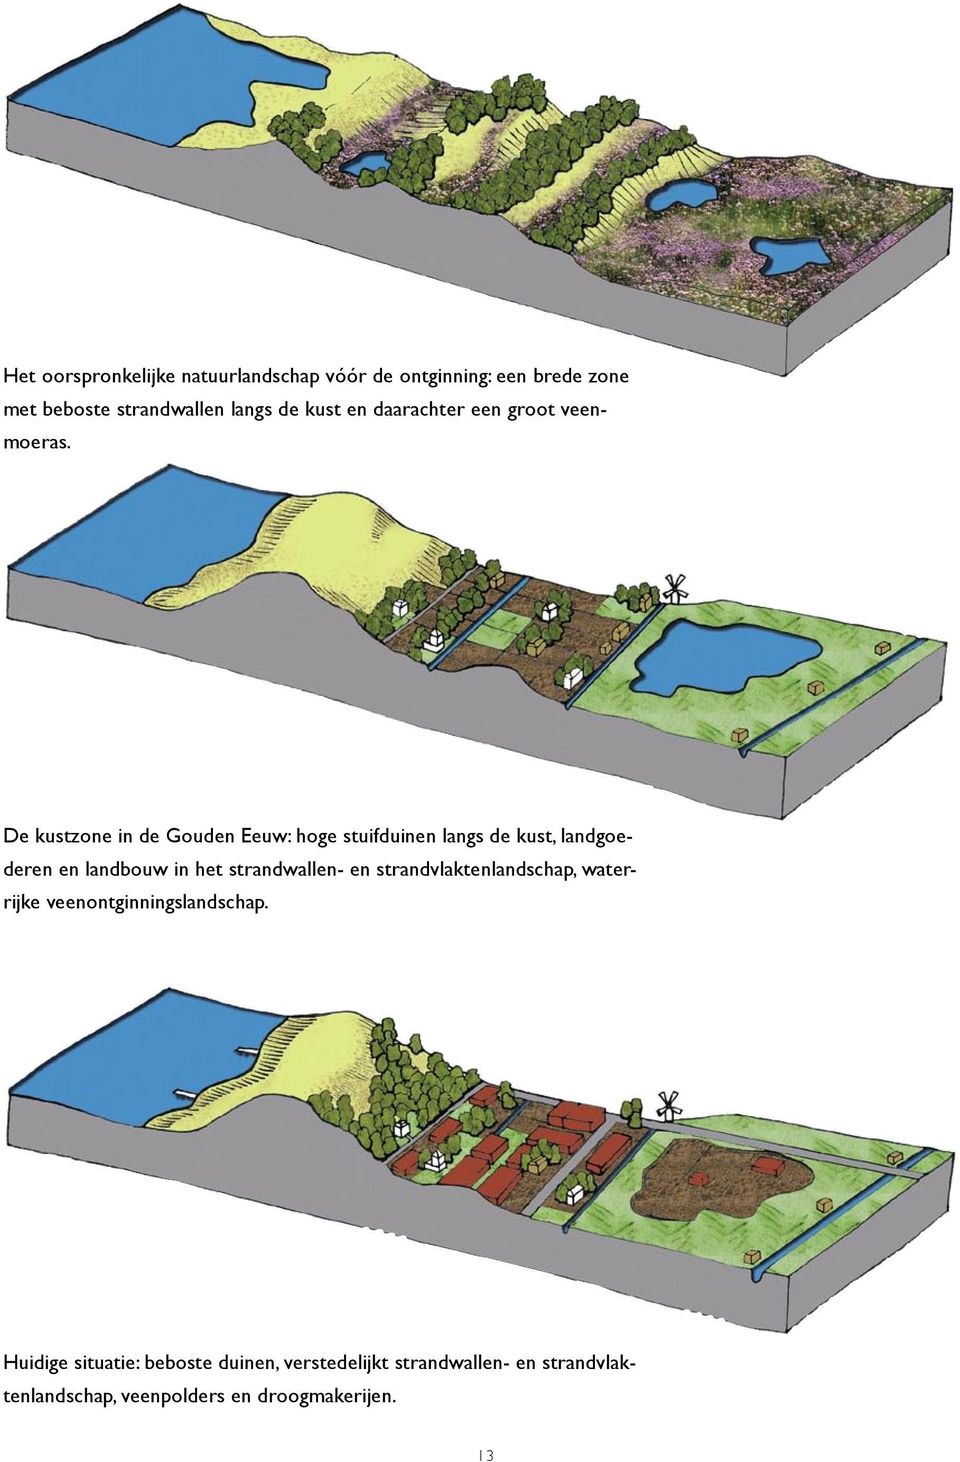 De kustzone in de Gouden Eeuw: hoge stuifduinen langs de kust, landgoederen en landbouw in het strandwallen-